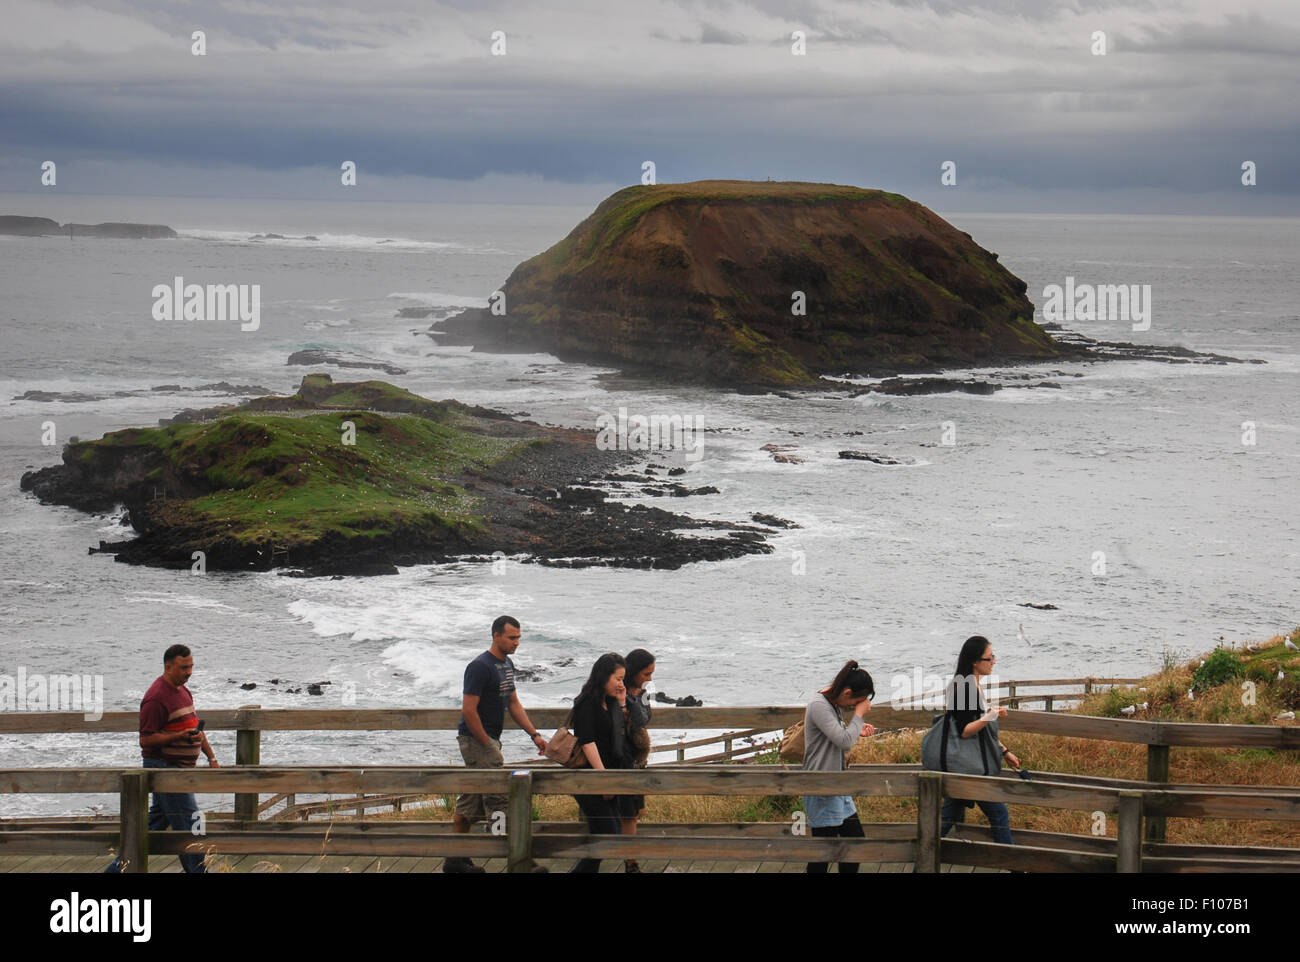 Die Menschen gehen im Steg mit Dichtung Felsen im Hintergrund. The Nobbies, Phillip Island, Victoria, Australien. Stockfoto